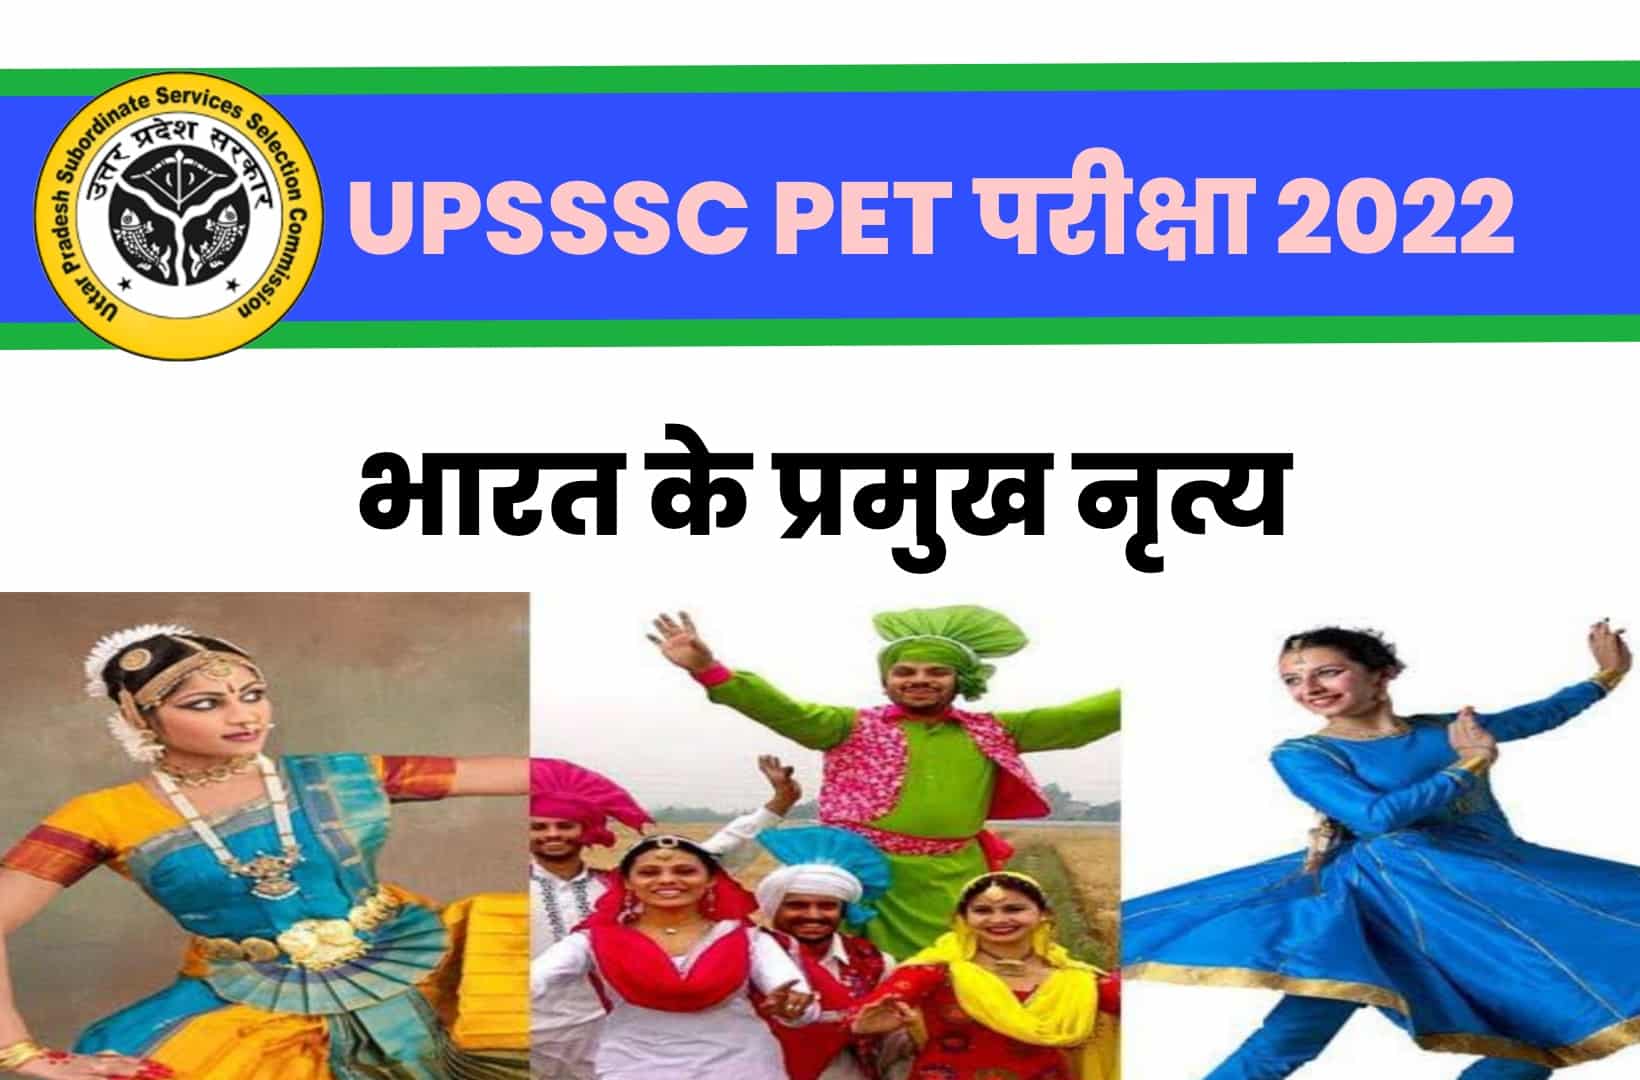 UPSSSC PET Exam 2022 MCQ | परीक्षा में दाखिल होने से पहले भारत के प्रमुख नृत्य से जुड़ें मुख्य प्रश्नों को एक नजर जरूर देखें